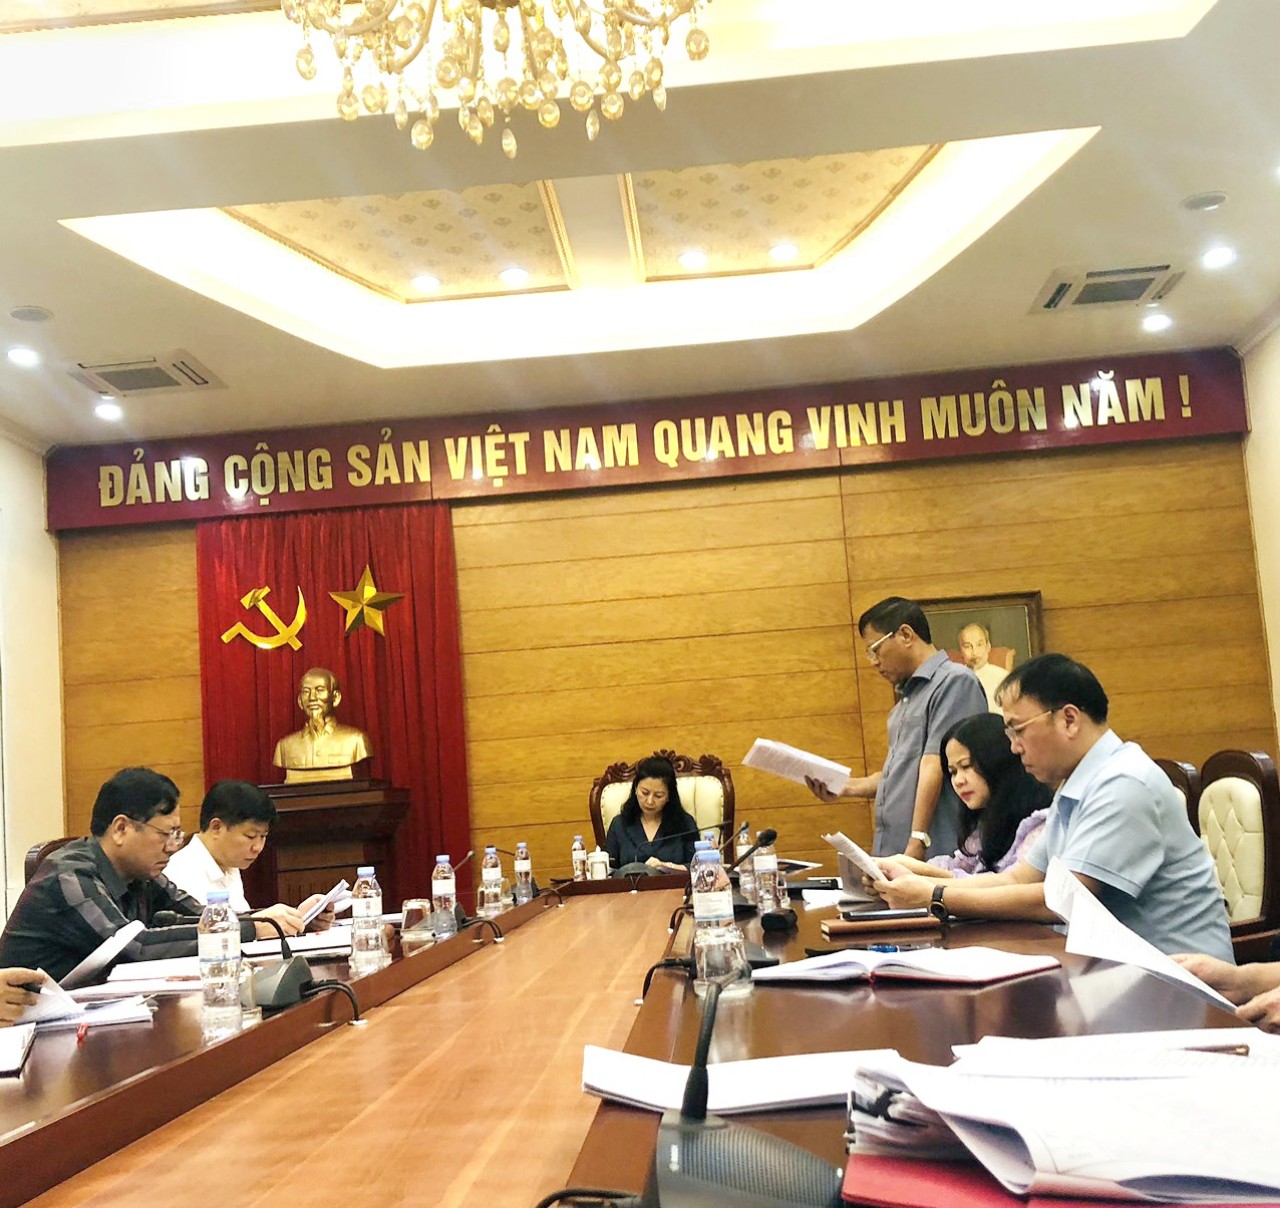 Bắc Giang: Họp Hội đồng thi nâng ngạch công chức, thăng hạng chức danh nghề nghiệp viên chức...